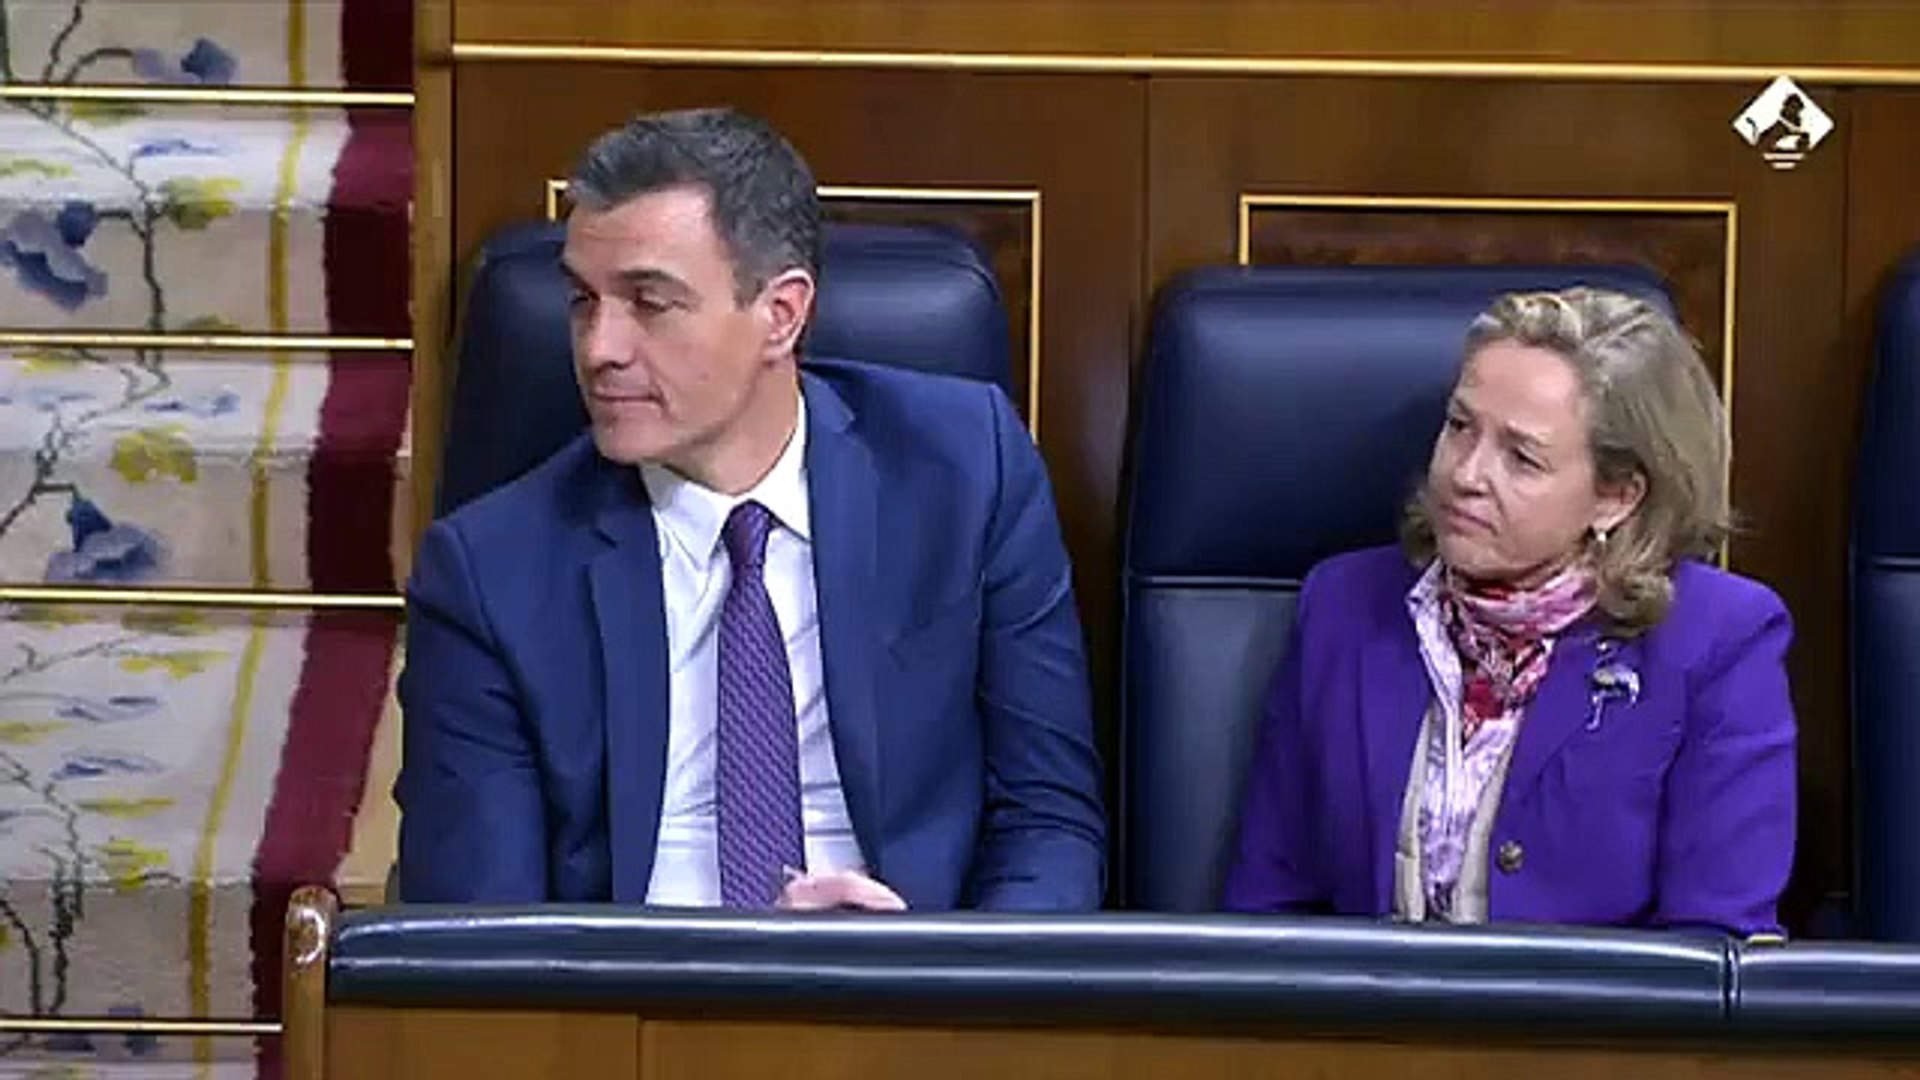 Arrimadas desmonta en el Congreso la "partida de petanca fake" de Sánchez  en Coslada: "Como esto, todo" - Vídeo Dailymotion